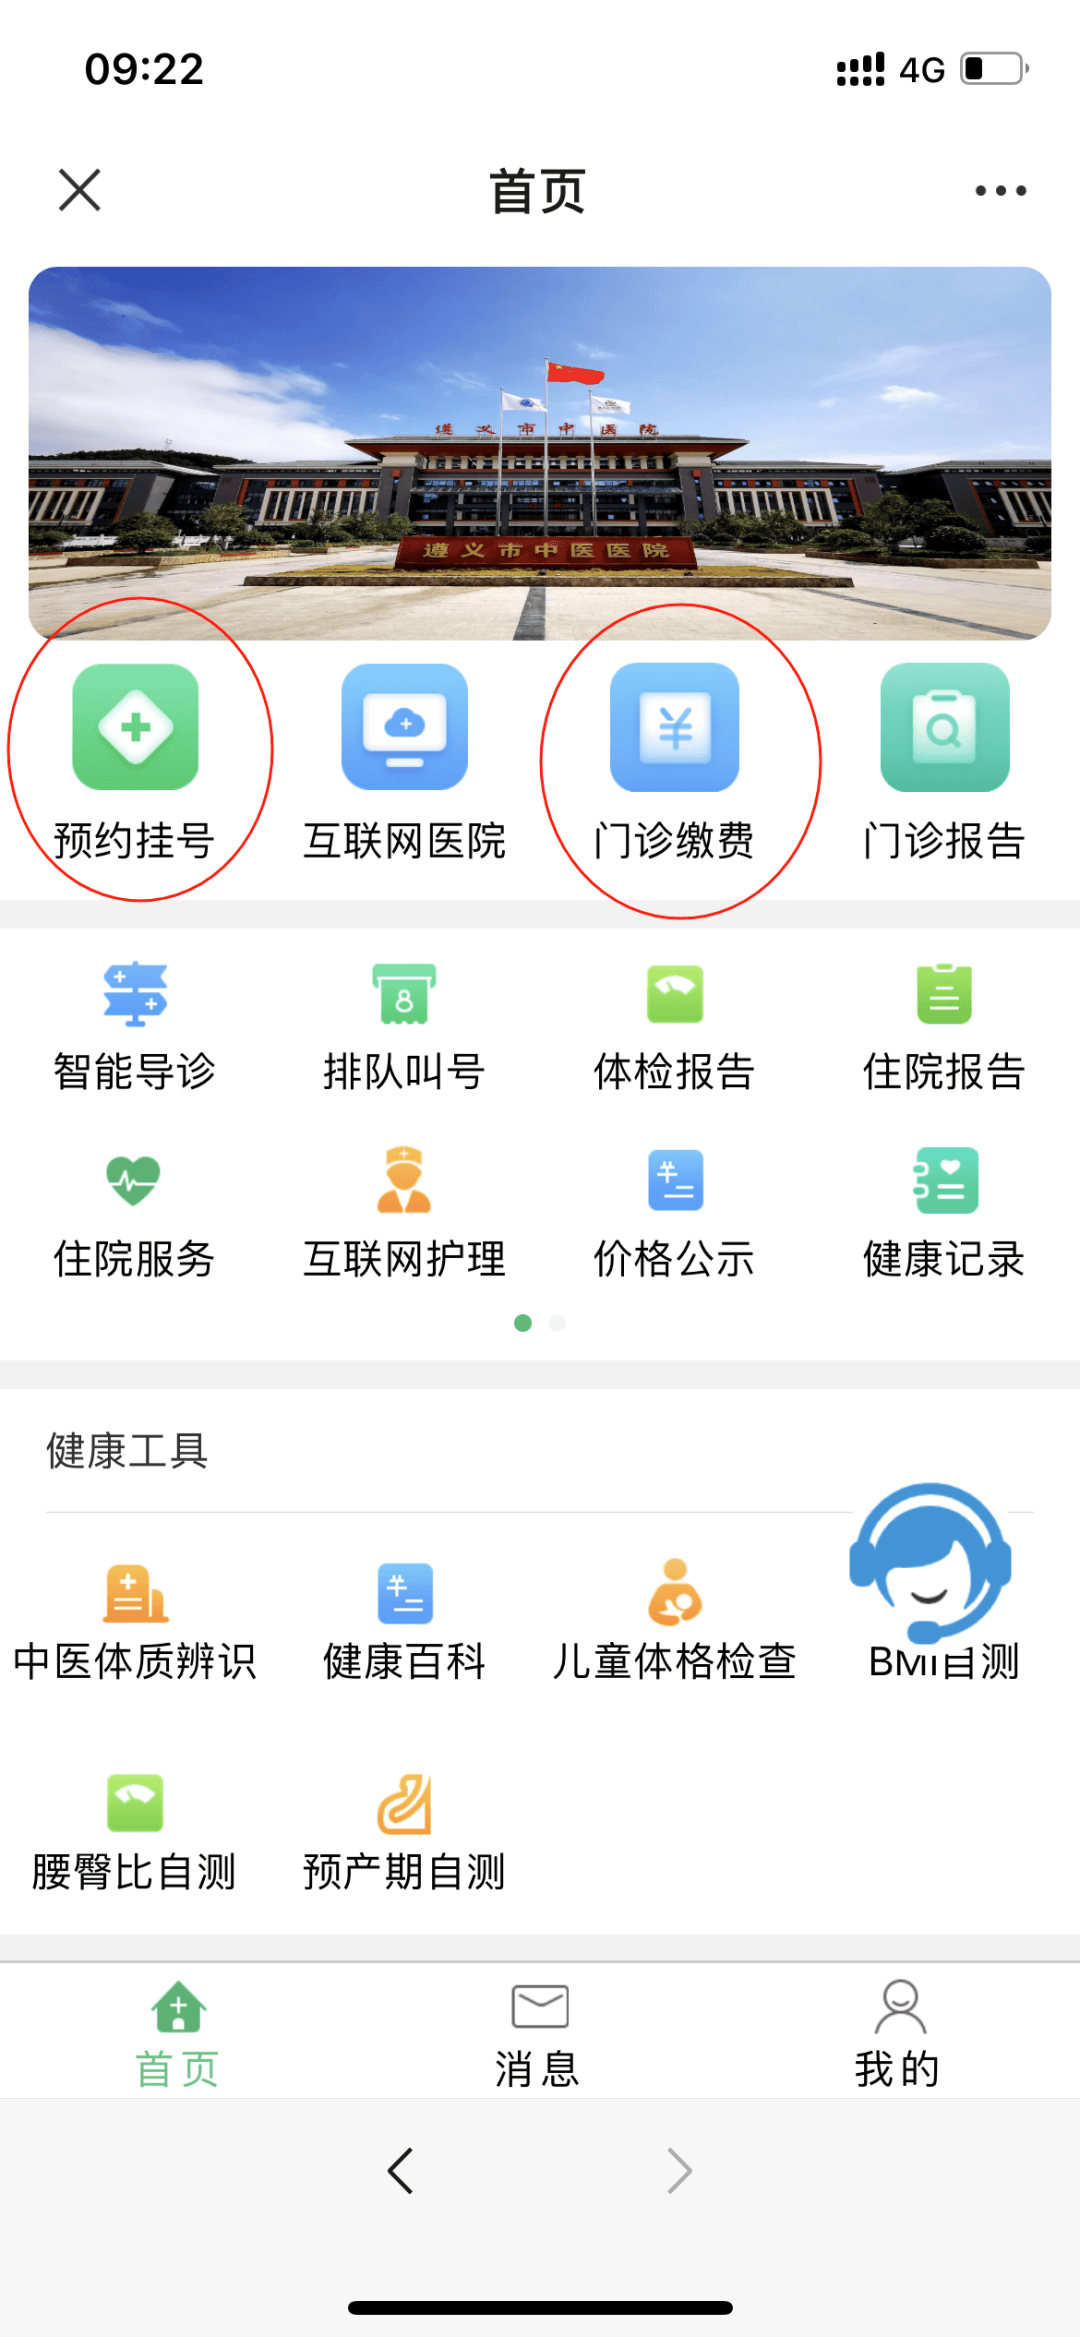 微信便民服务平台图片